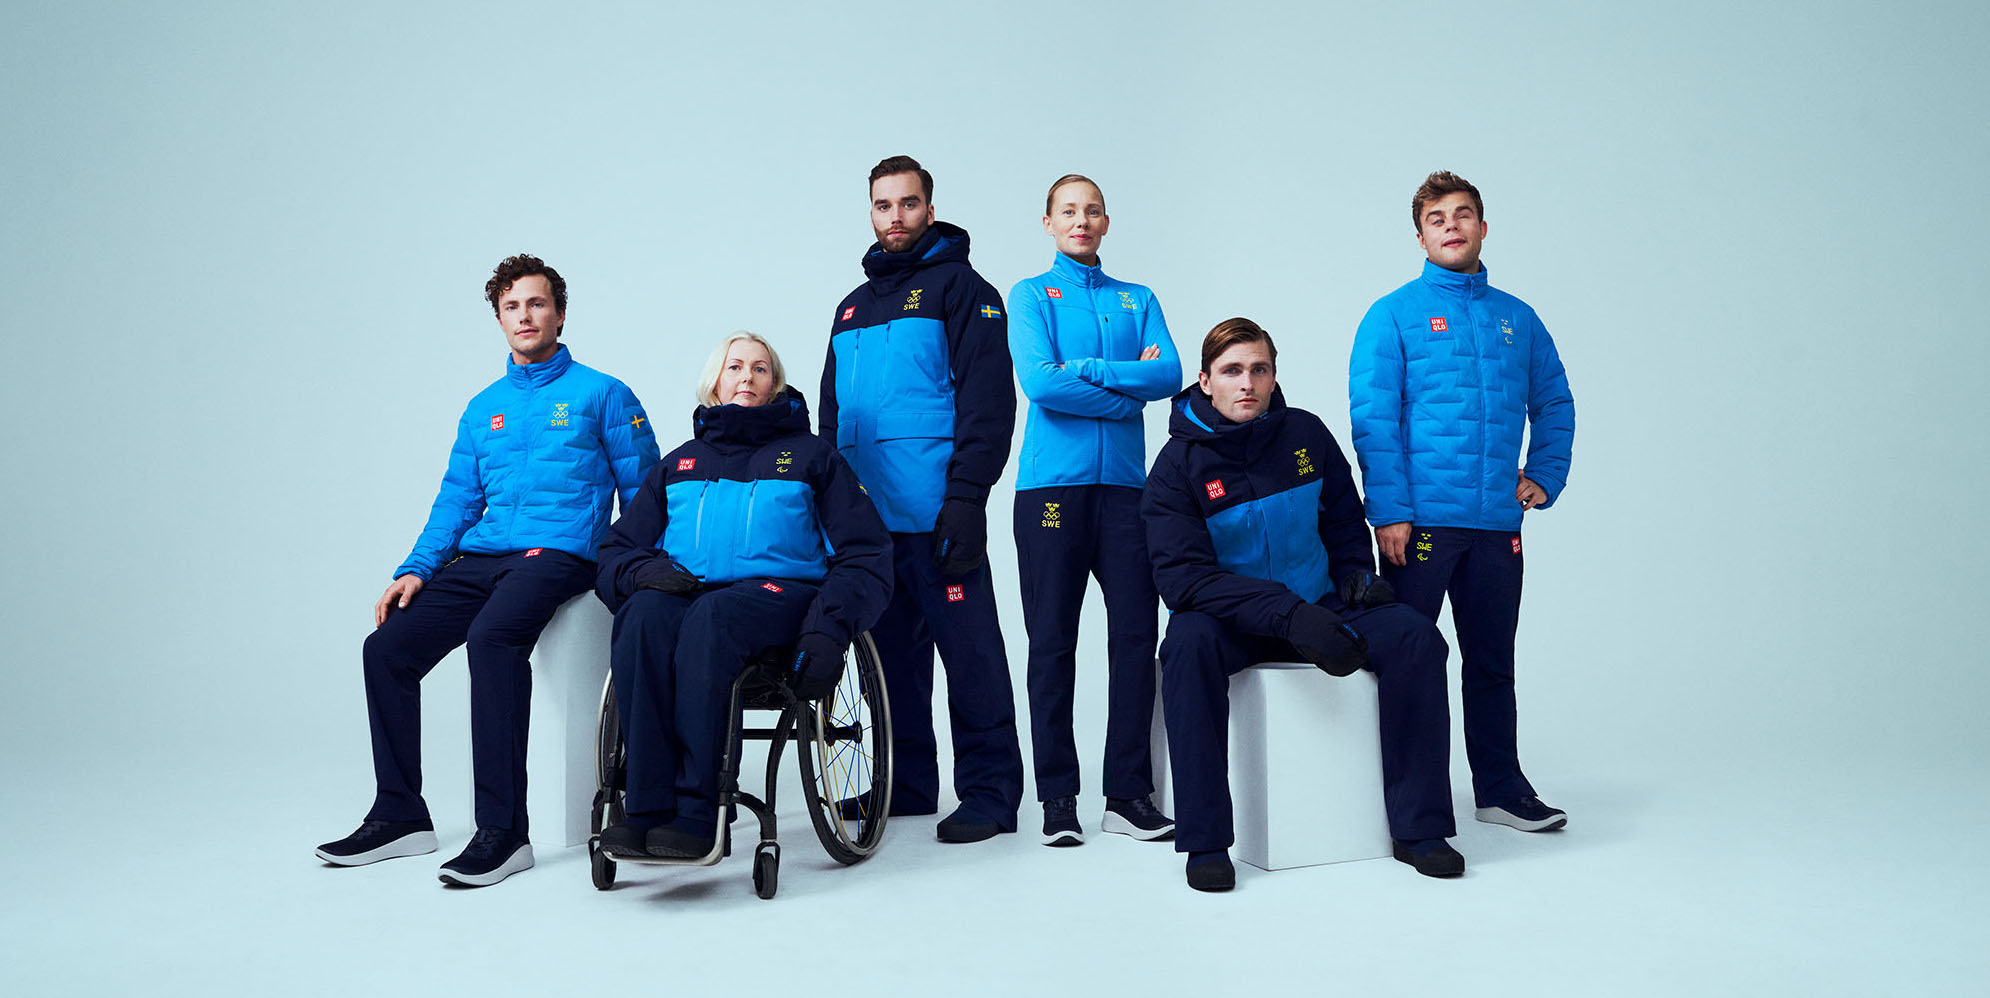 UNIQLO presenterar de officiella kläderna för OS och Paralympics i Peking 2022